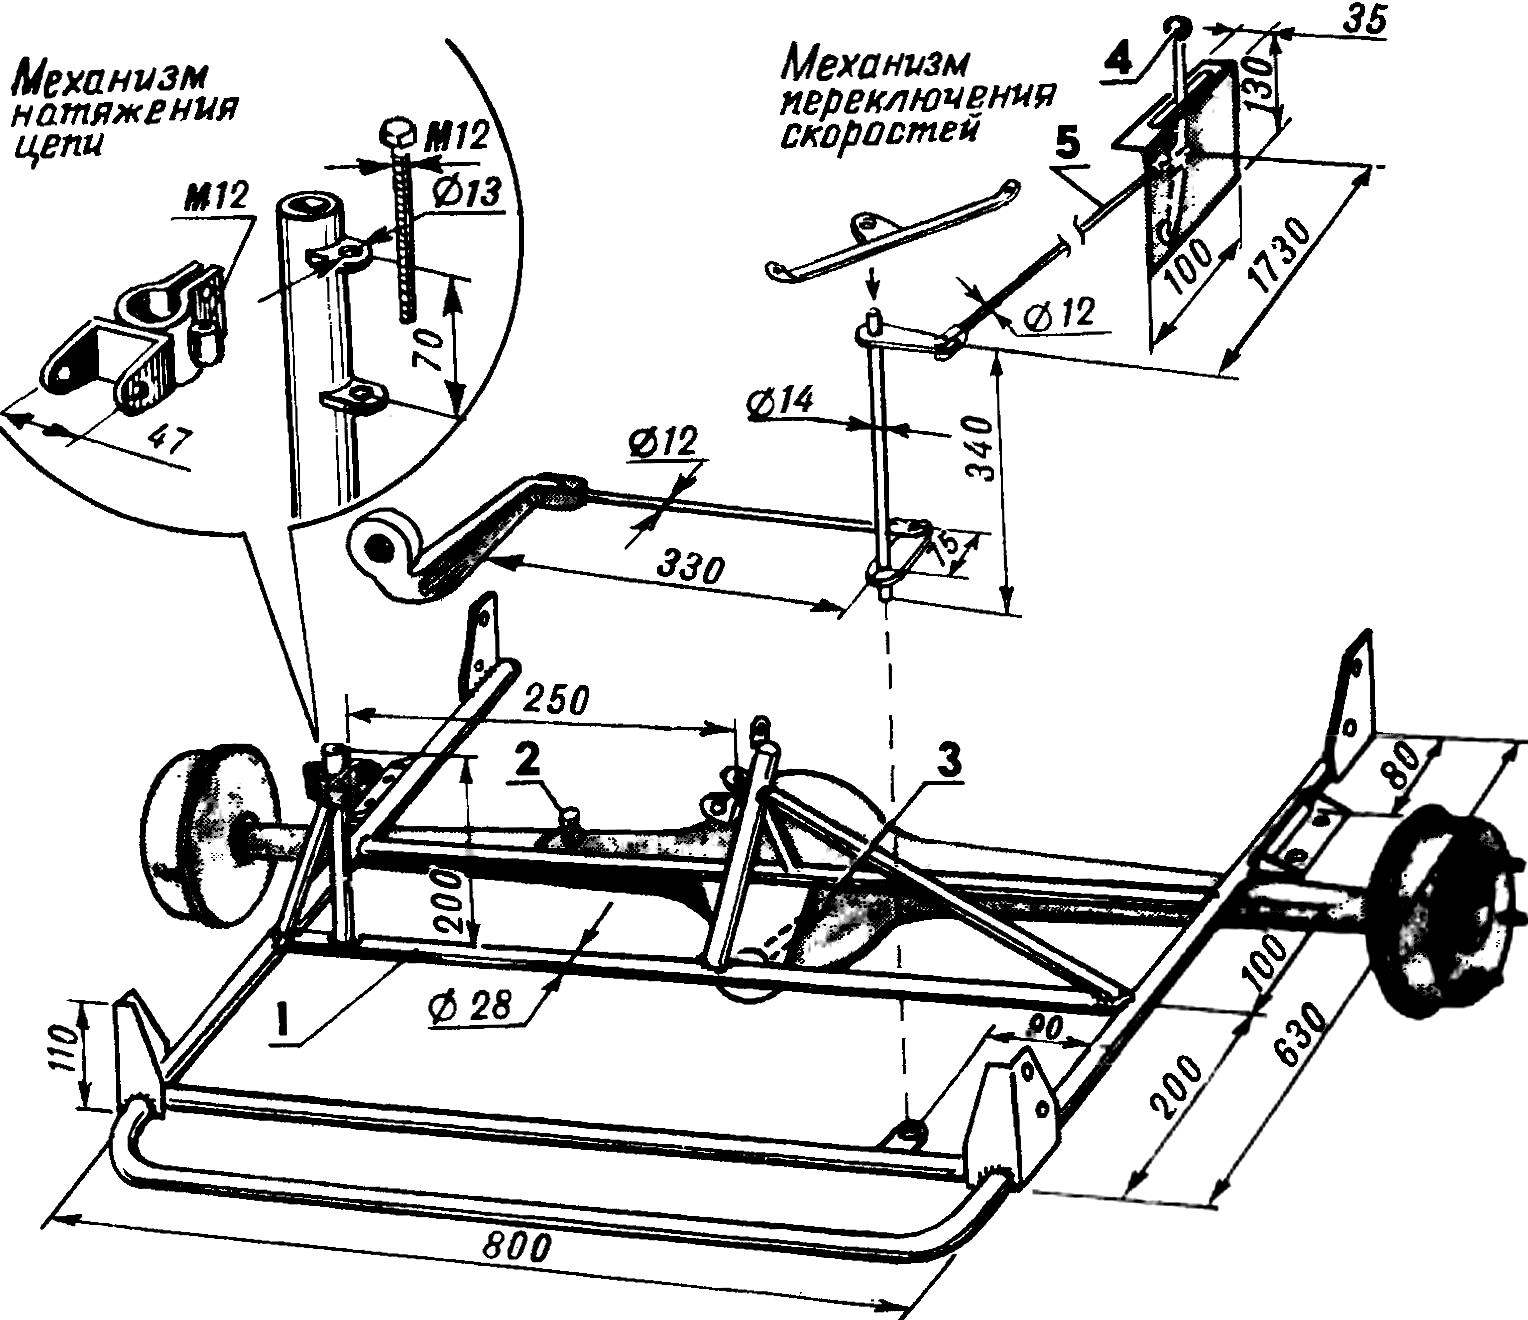  самодельный квадроцикл — инструкции по изготовлению самодельного квадроцикла, чертежи и спецификации